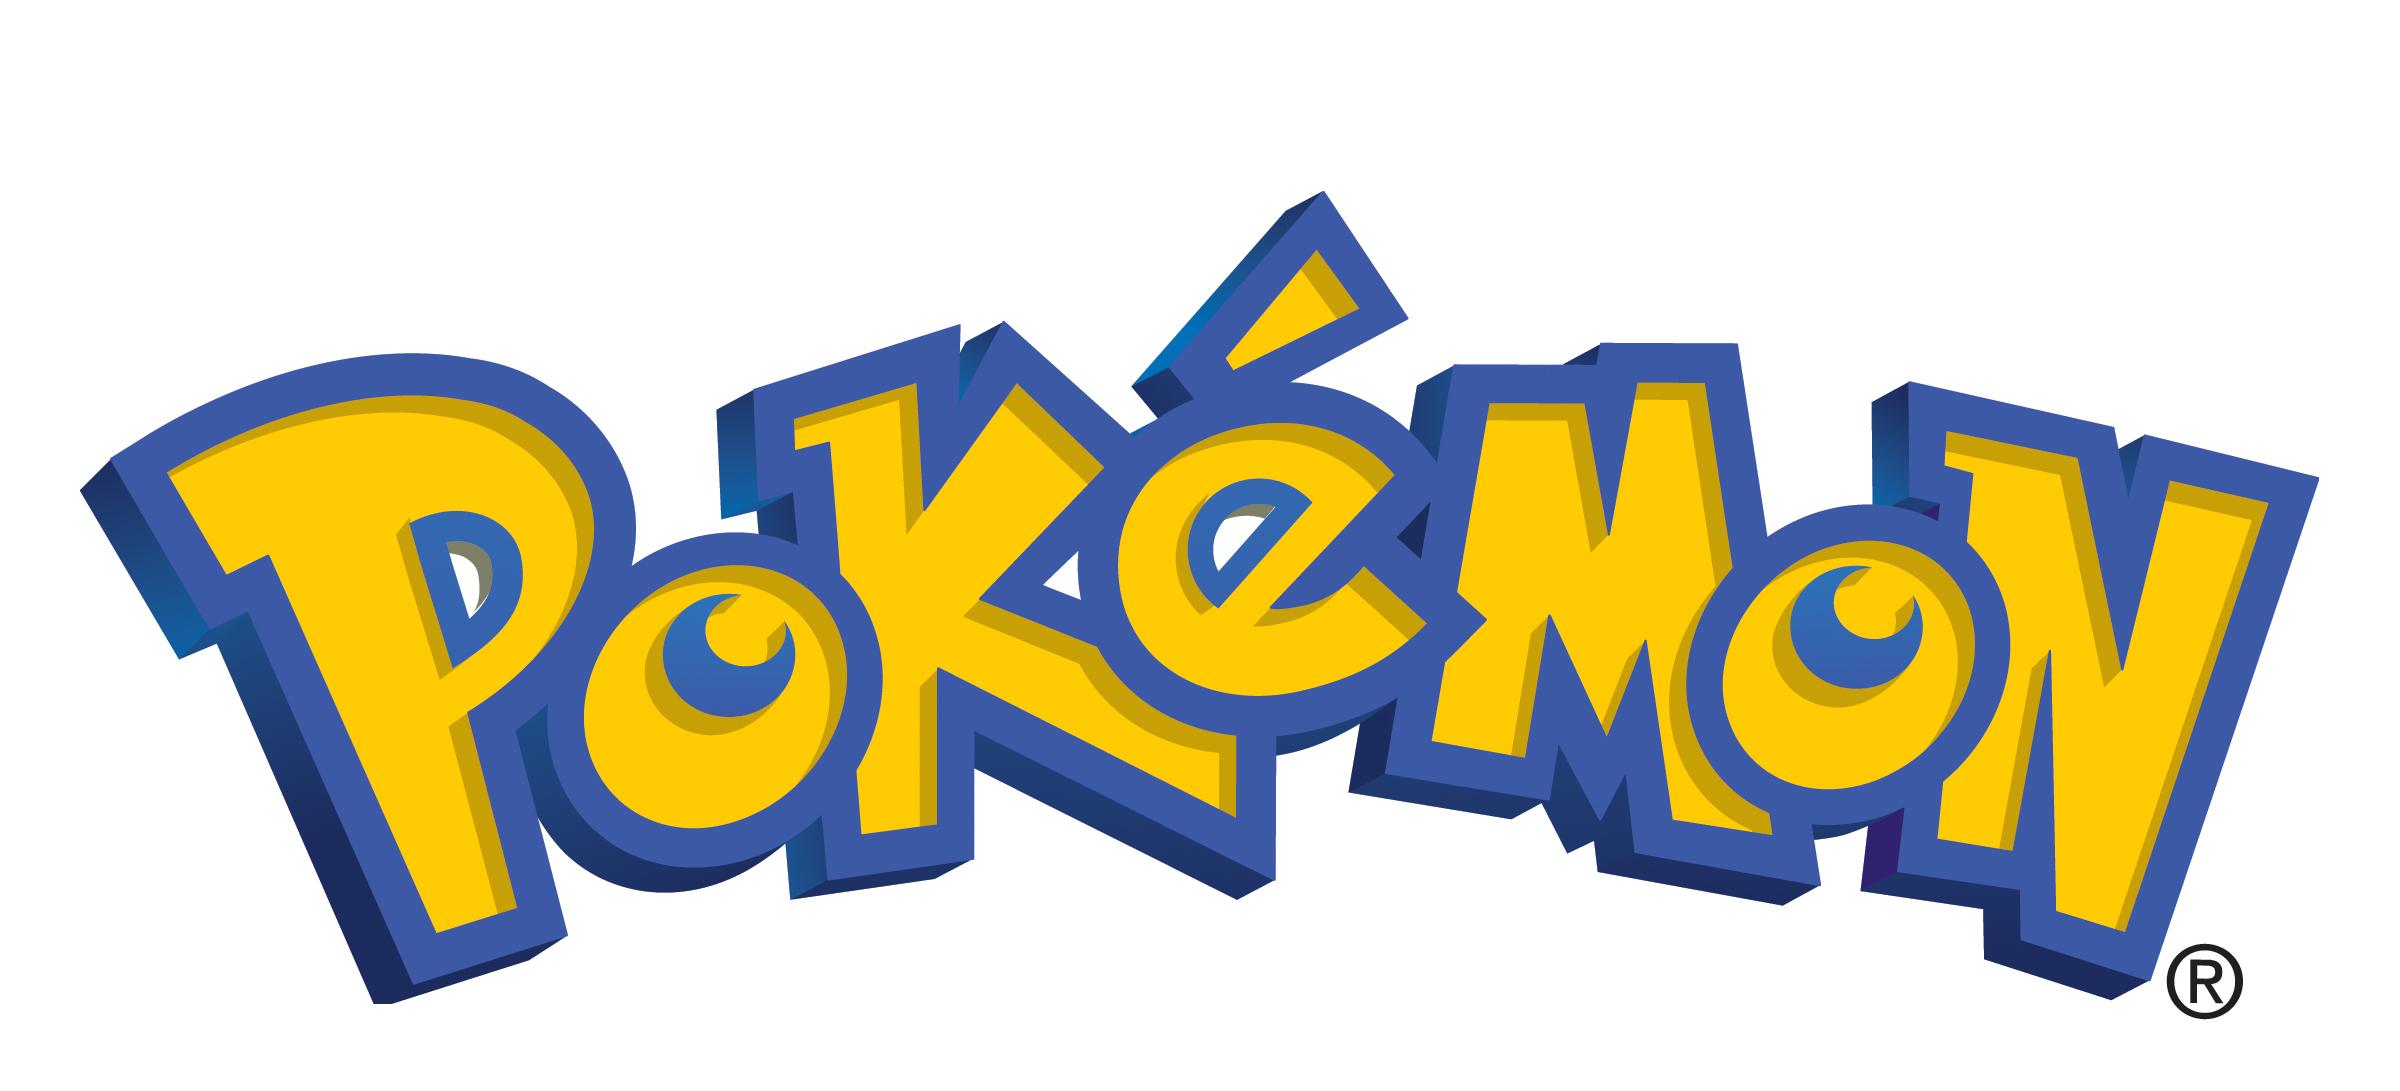 Pokémon: Symphonic Evolutions Live Orchestral Concert Tour Kicks Off in Washington, DC, on August 15, 2014